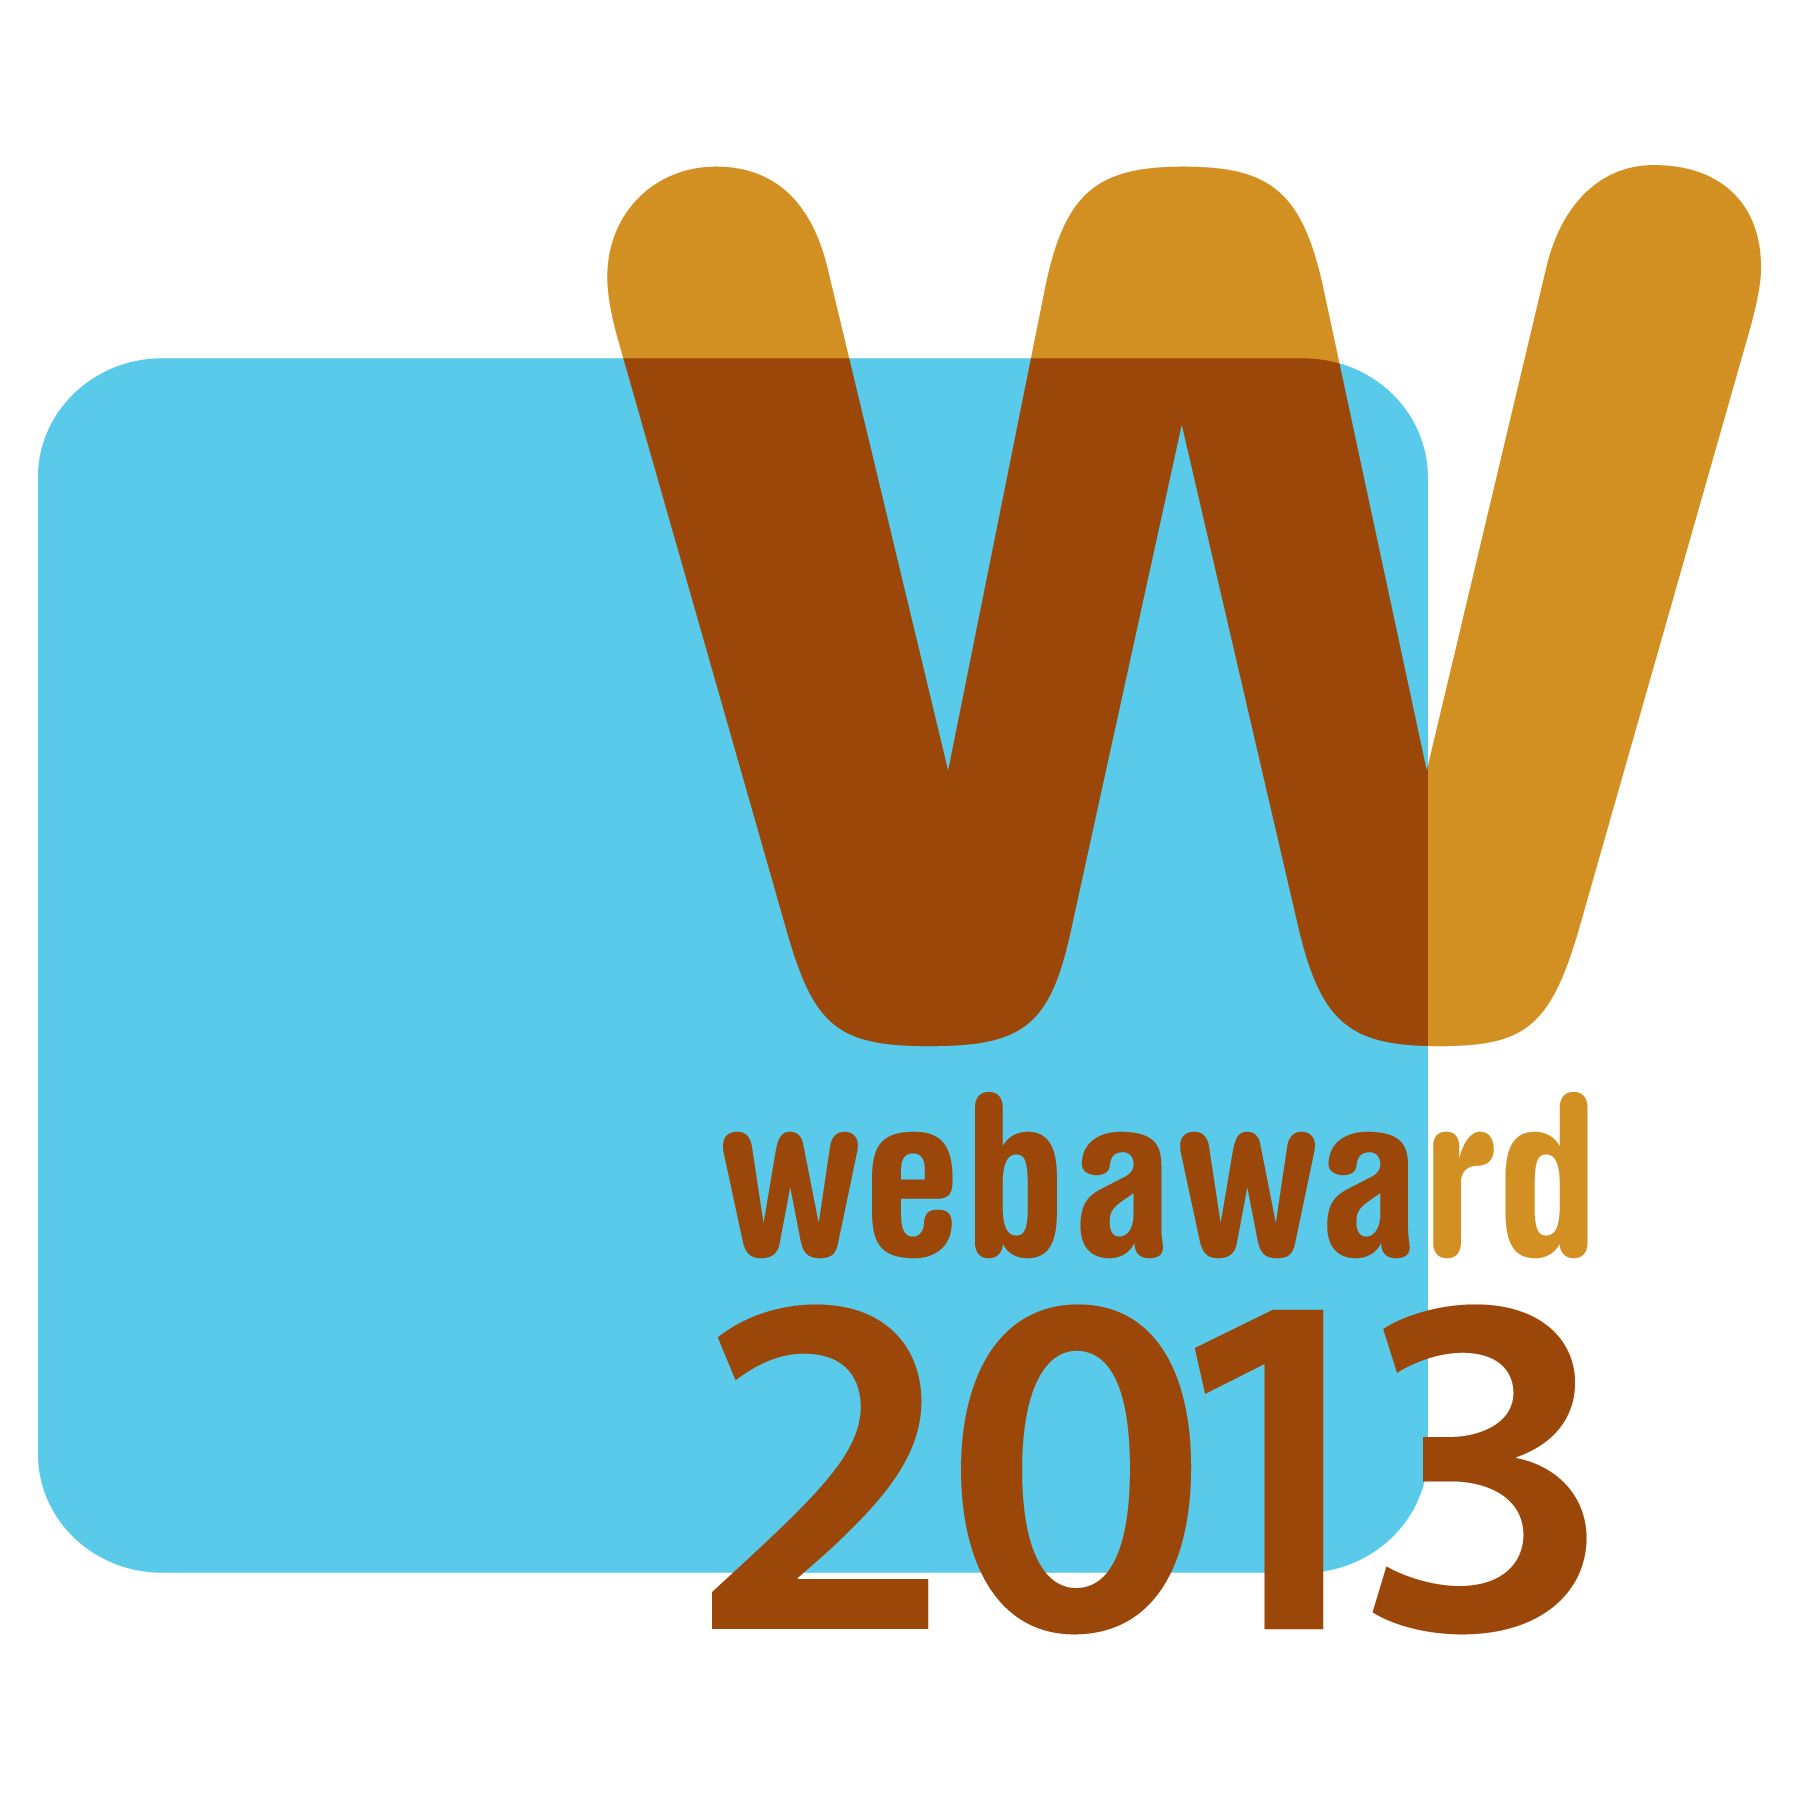 2013 Web Award